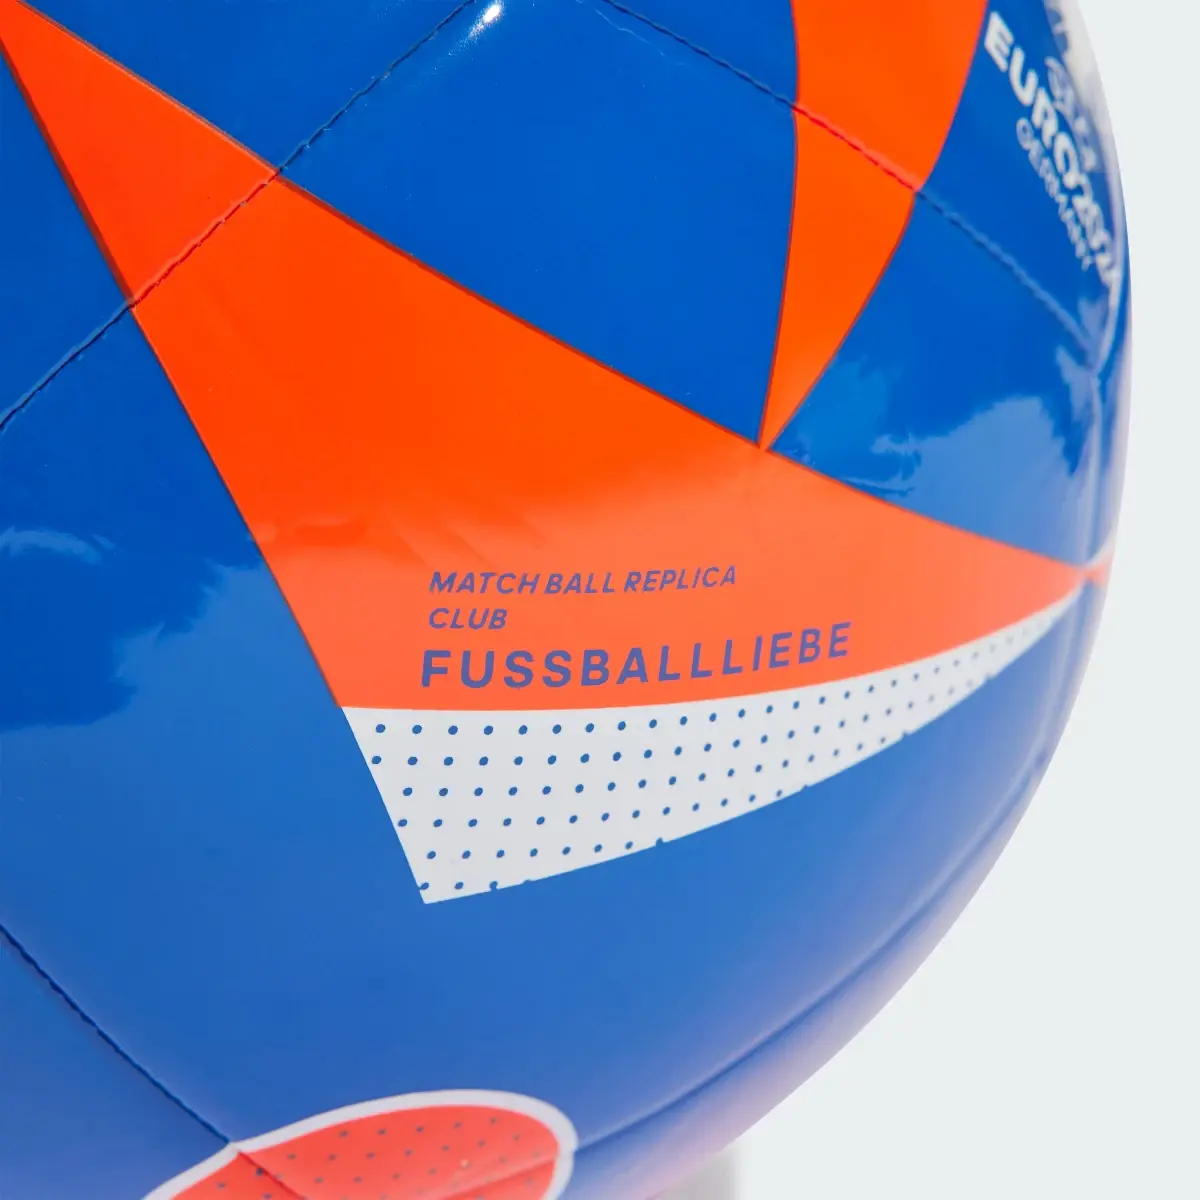 Adidas Ballon Fussballliebe Club. 3